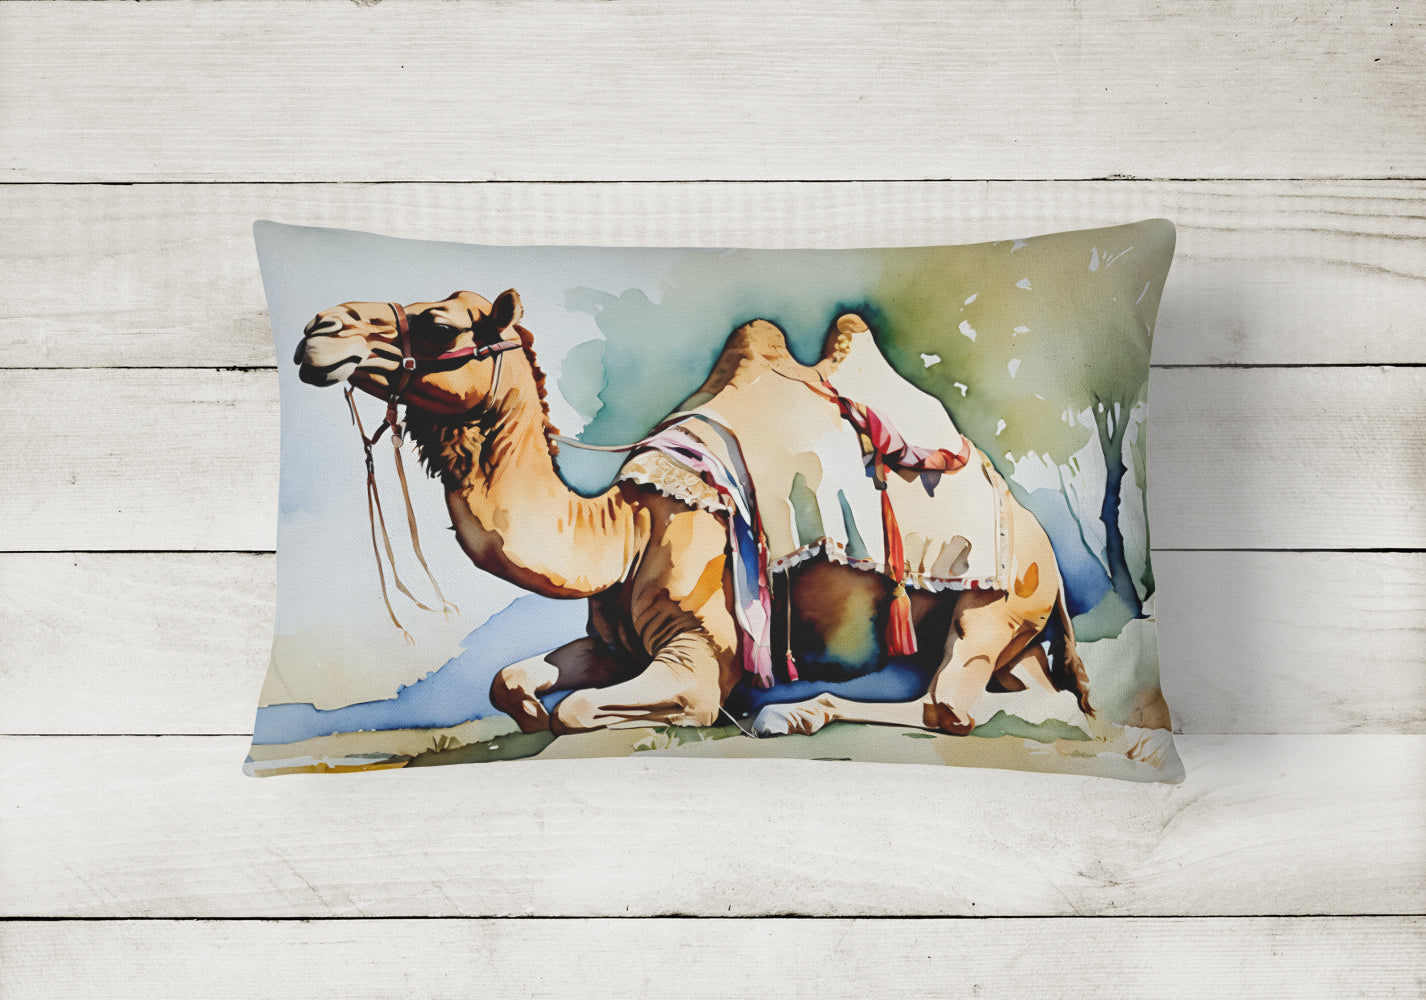 Camel Throw Pillow